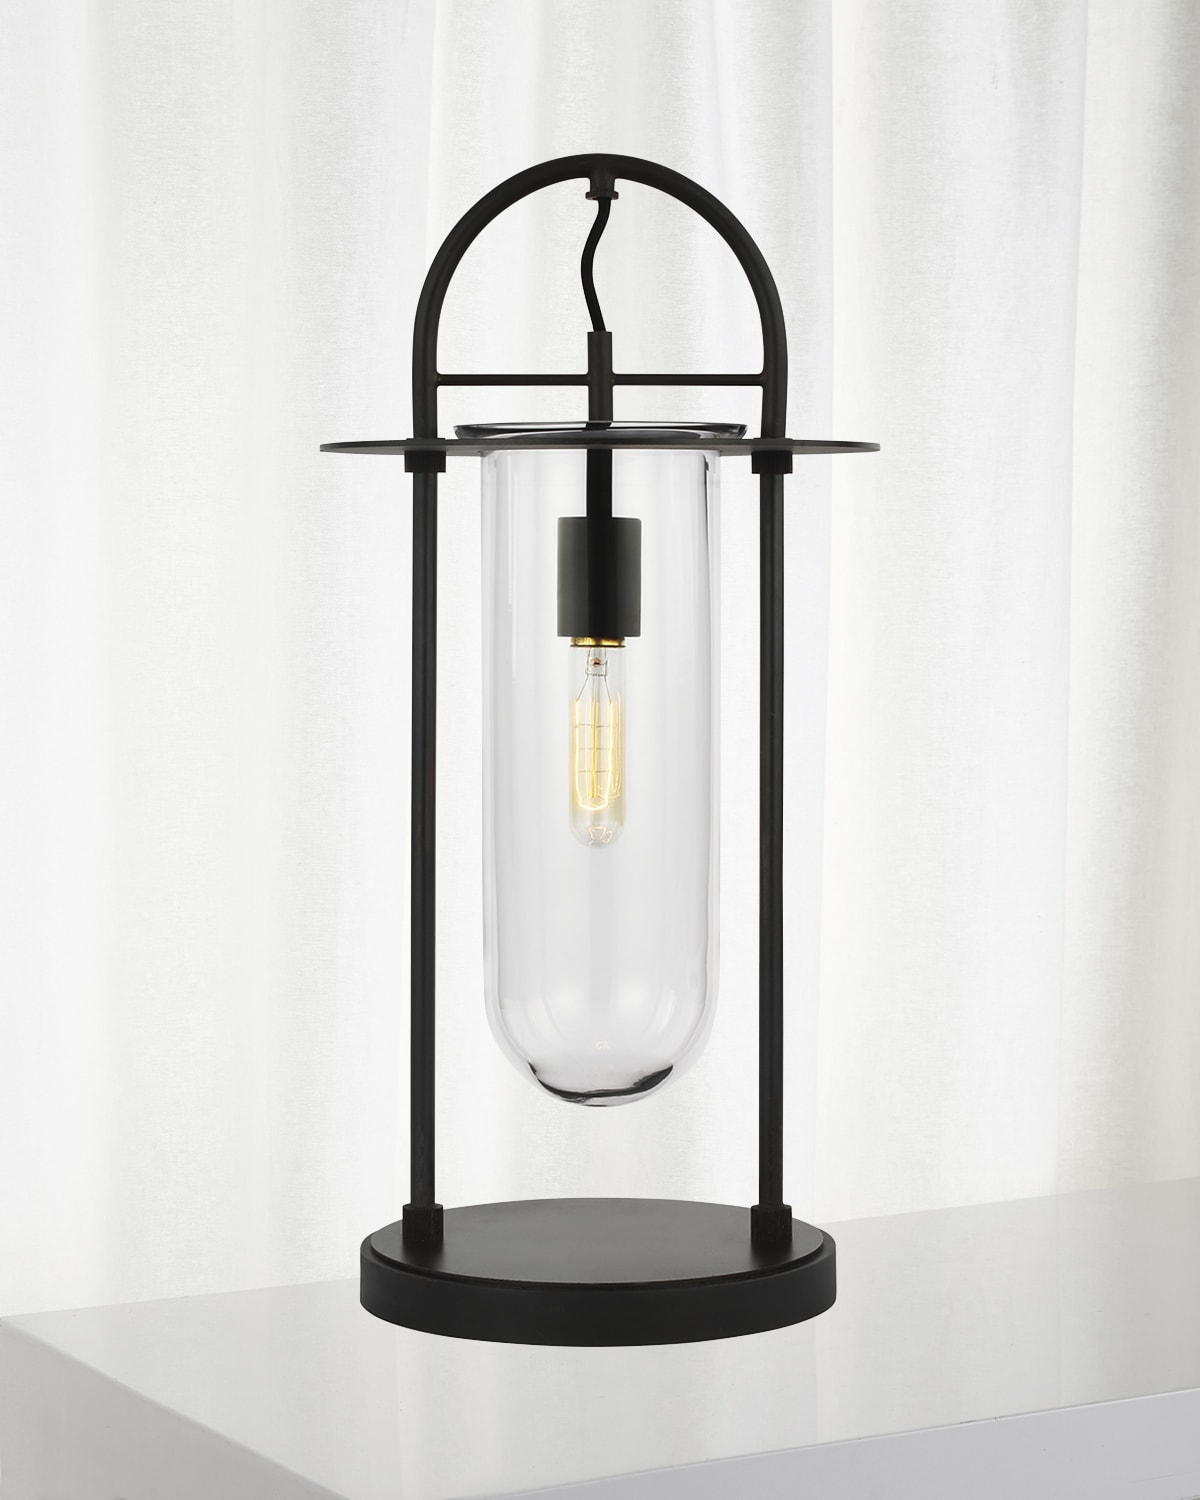 1 - Light Table Lamp Nuance By Kelly Wearstler